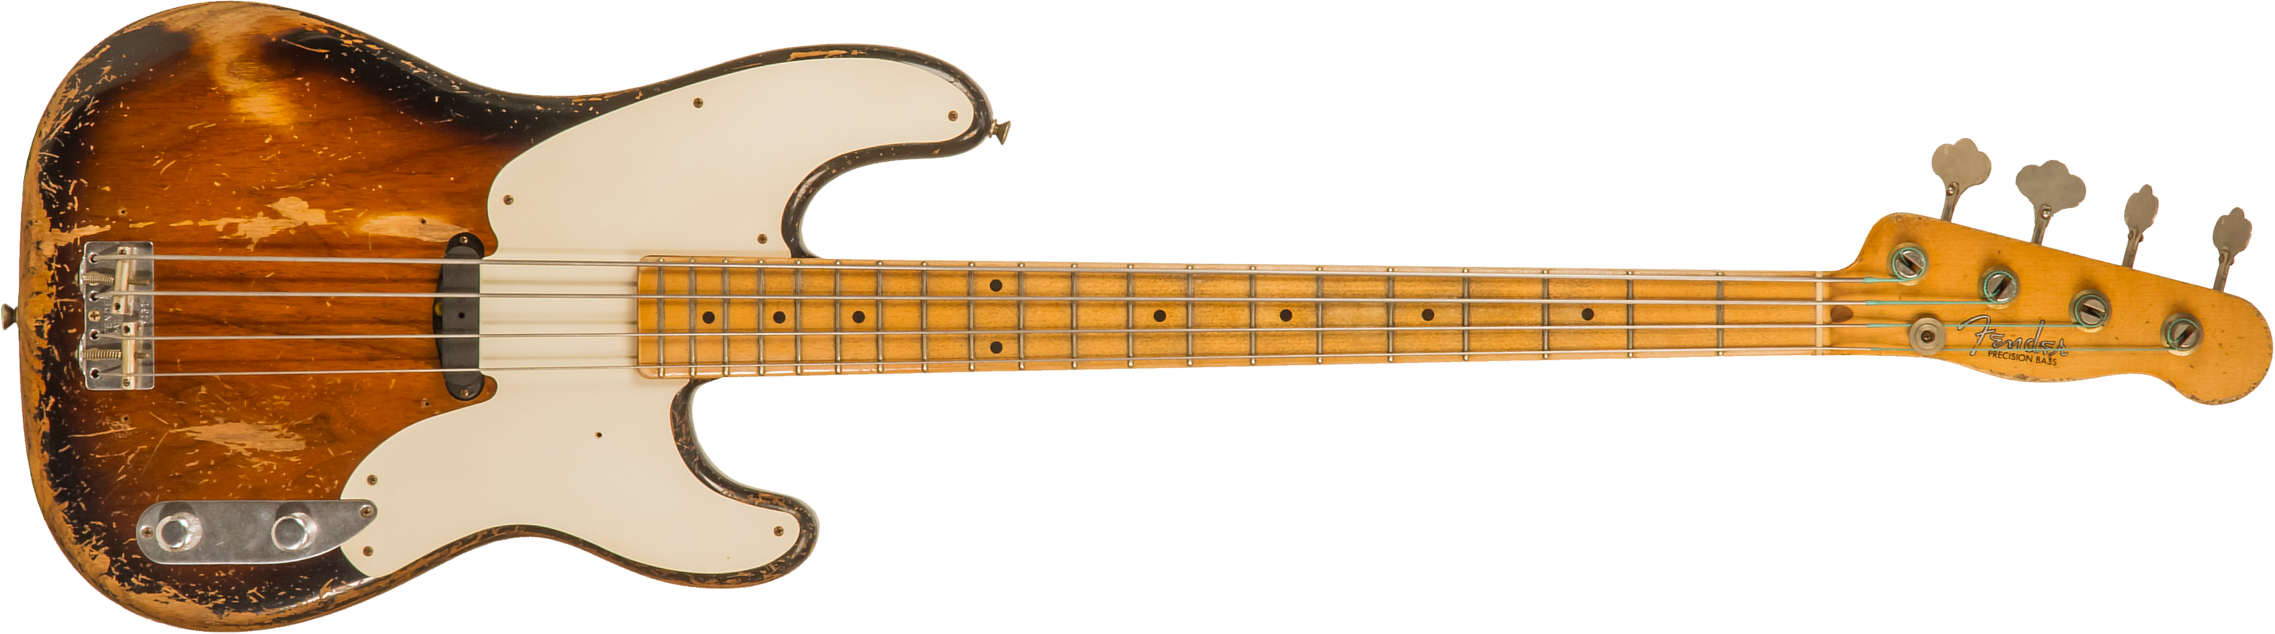 Fender Custom Shop Precision Bass 1955 Masterbuilt D.galuszka #xn3431 - Heavy Relic 2-color Sunburst - Basse Électrique Solid Body - Main picture